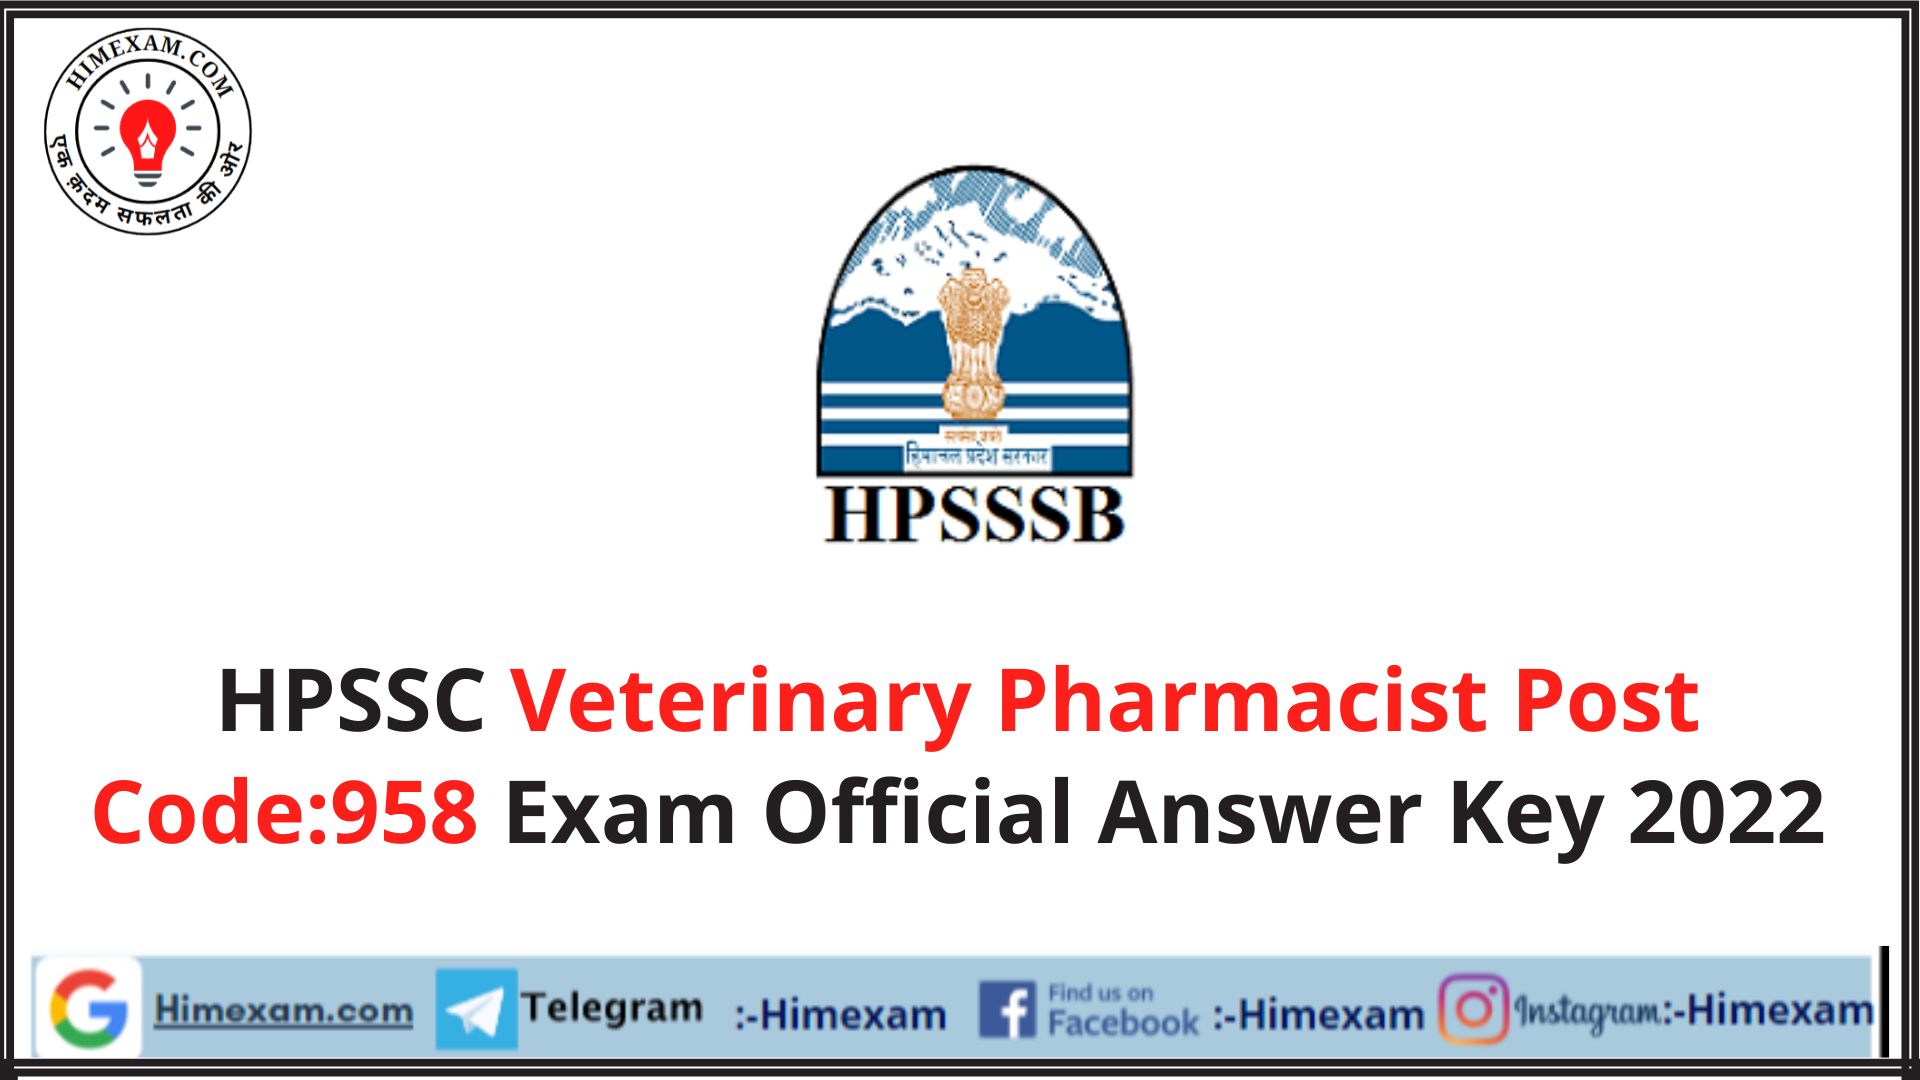 HPSSC Veterinary Pharmacist Post Code:958 Exam Official Answer Key 2022